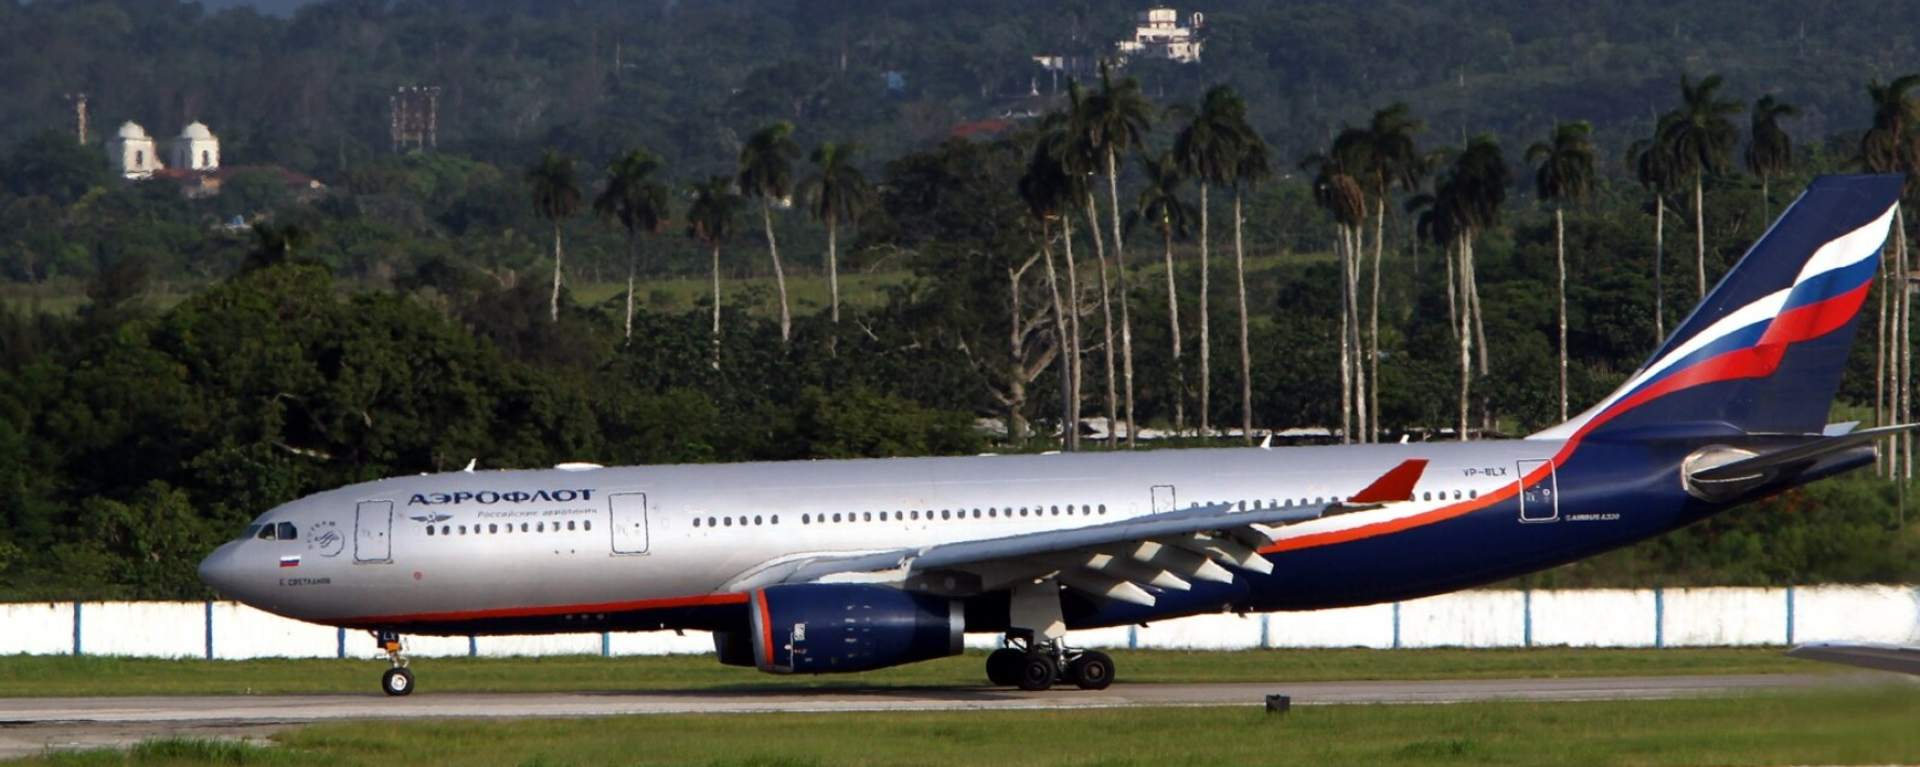 A passenger aircraft from Russia's national airline Aeroflot lands at Cuba's Havana Jose Marti International Airport in 2013. - Sputnik International, 1920, 03.01.2022